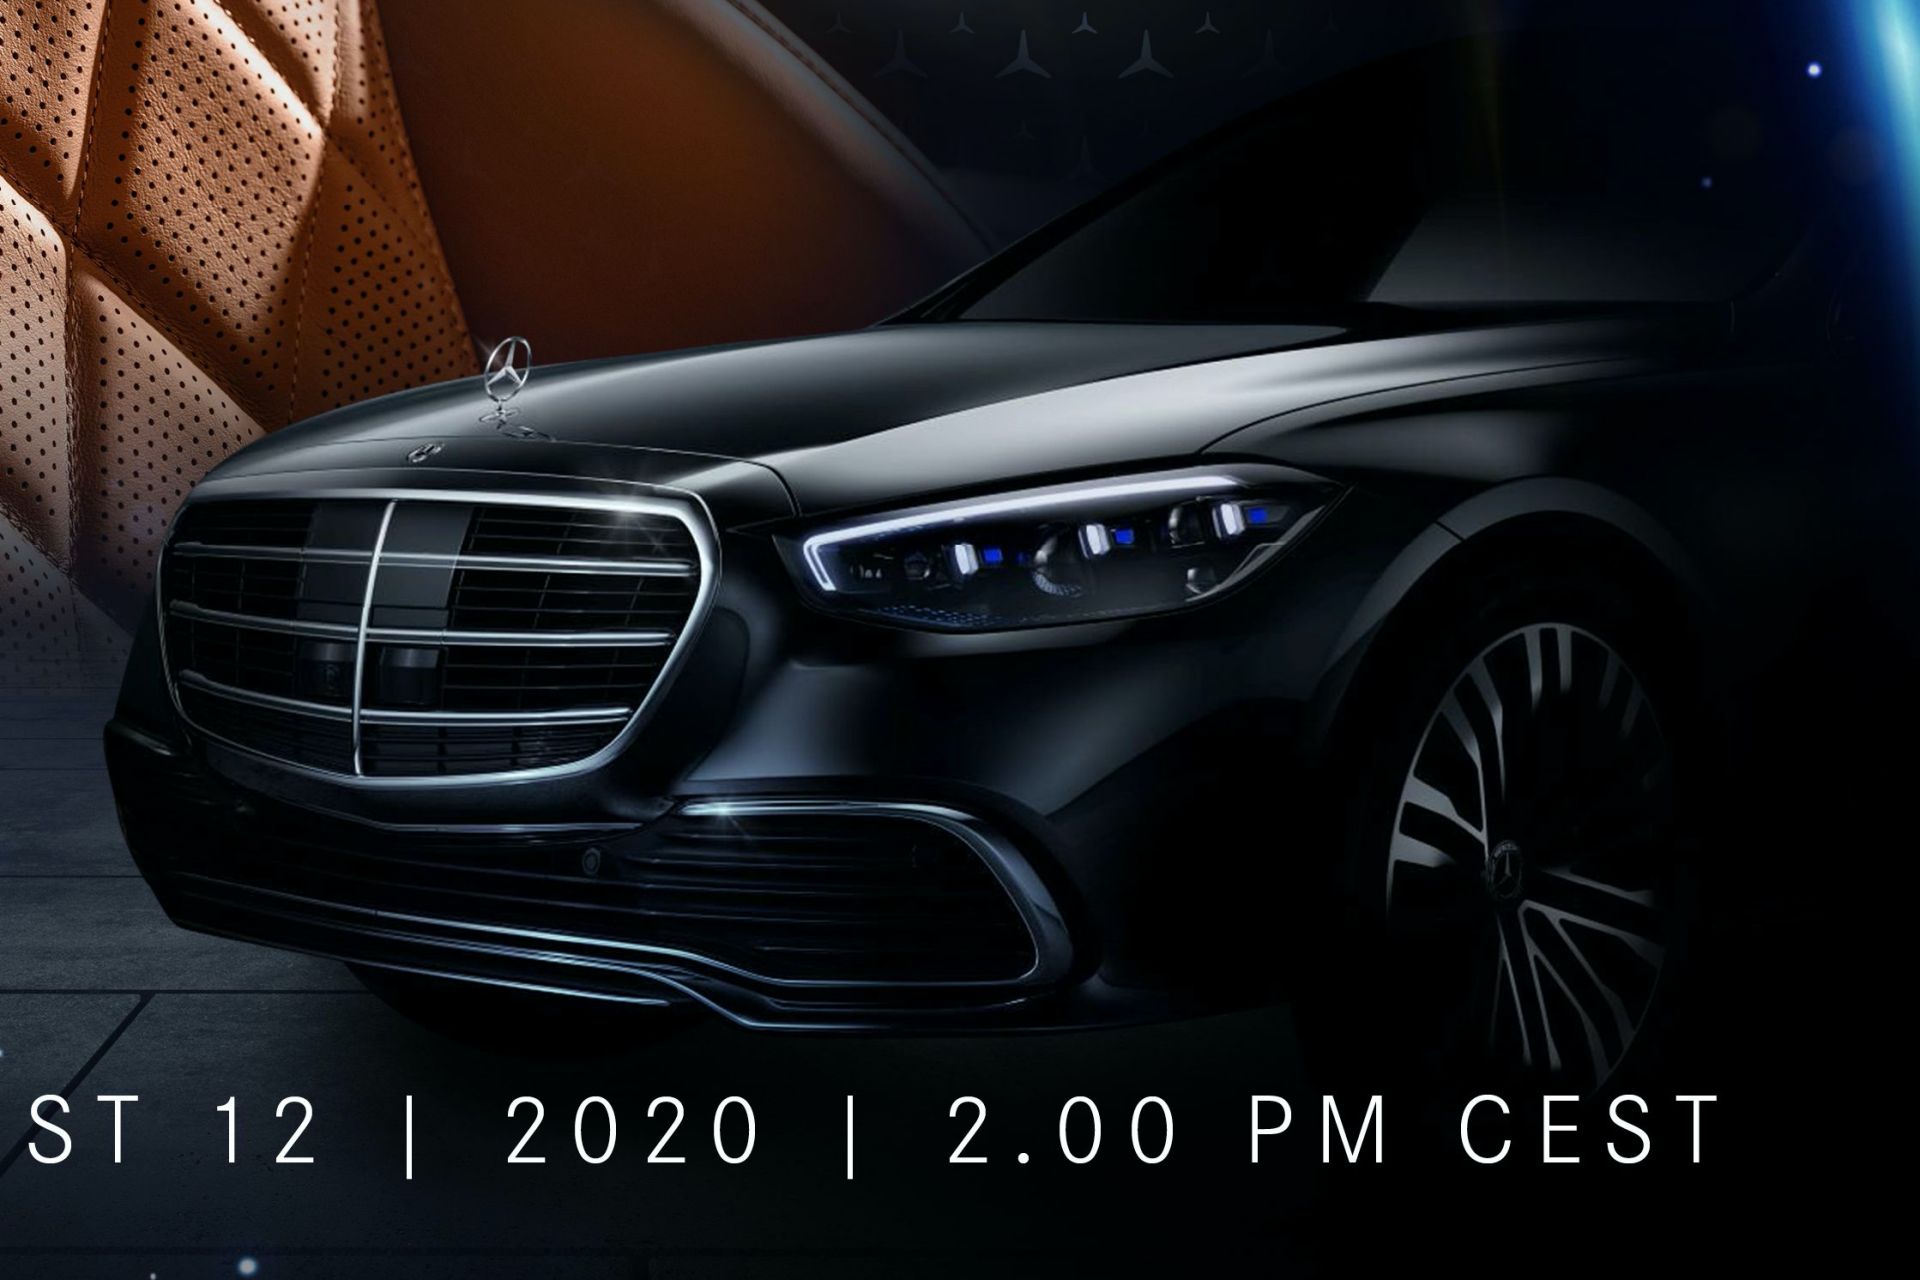 2021 Mercedes S-Serisi resim galerisi (14.08.2020)